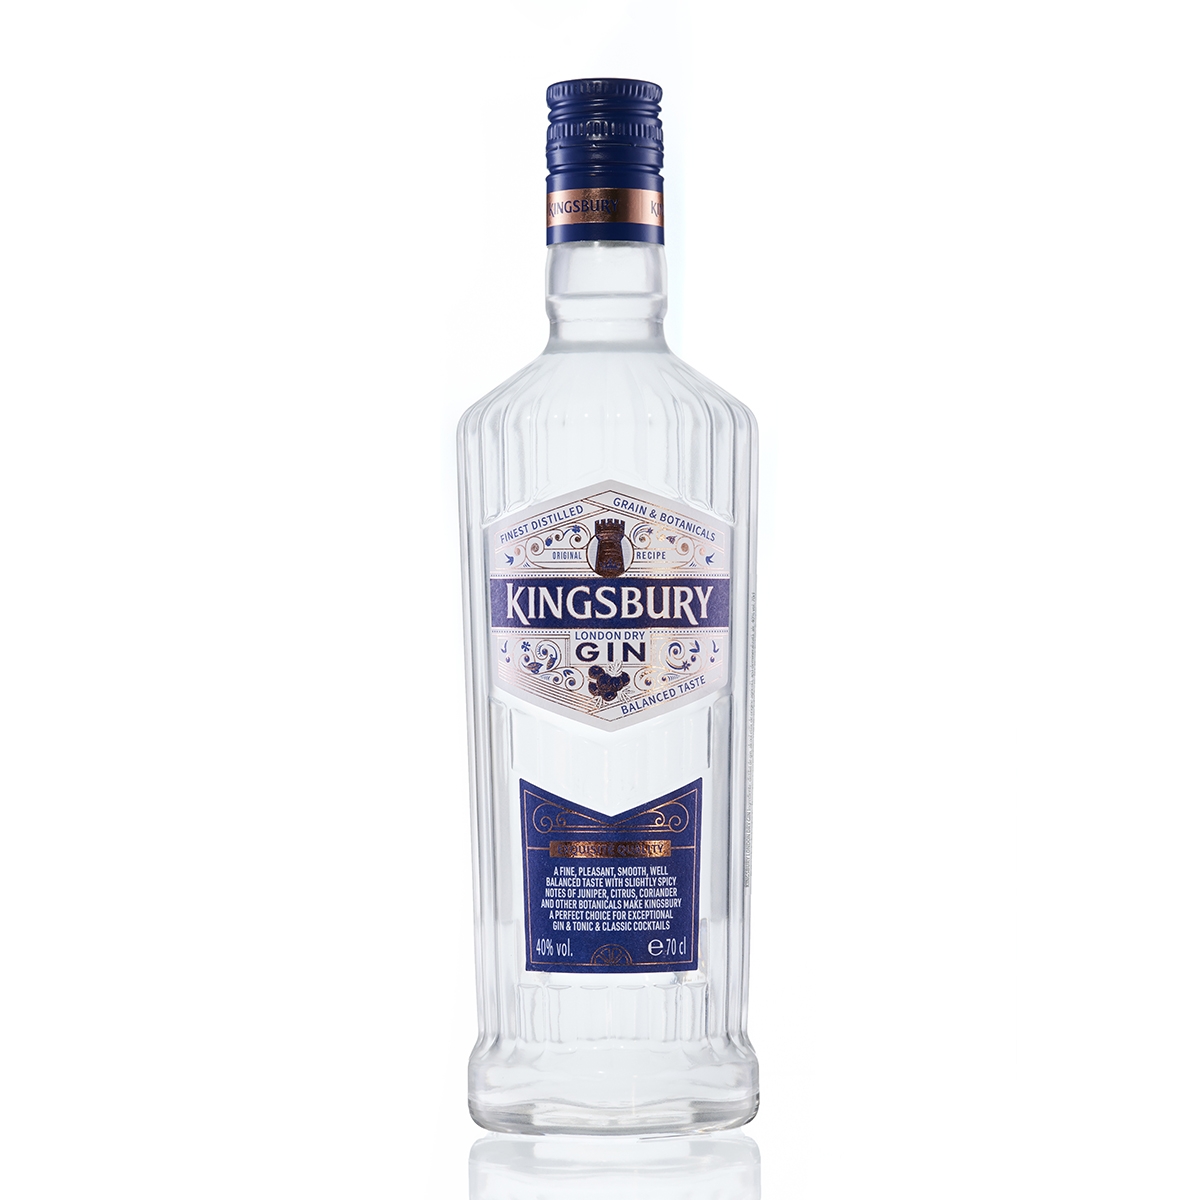 Kingsbury London Dry Gin - Feel like a King!